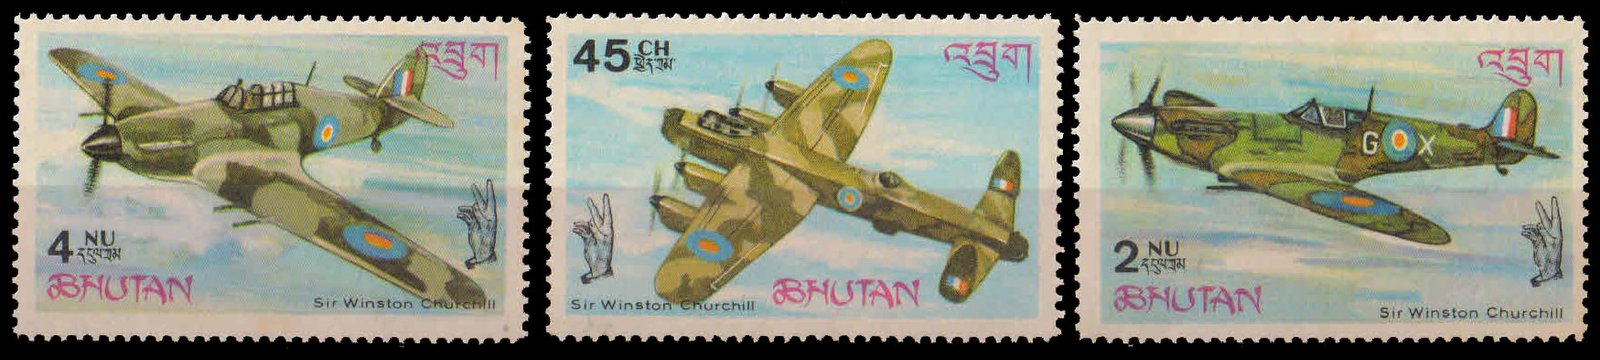 BHUTAN 1967-Churchill & Battle of Britain, Aircraft-Set of 3, MNH, S.G. 137-139-Cat � 2.60-